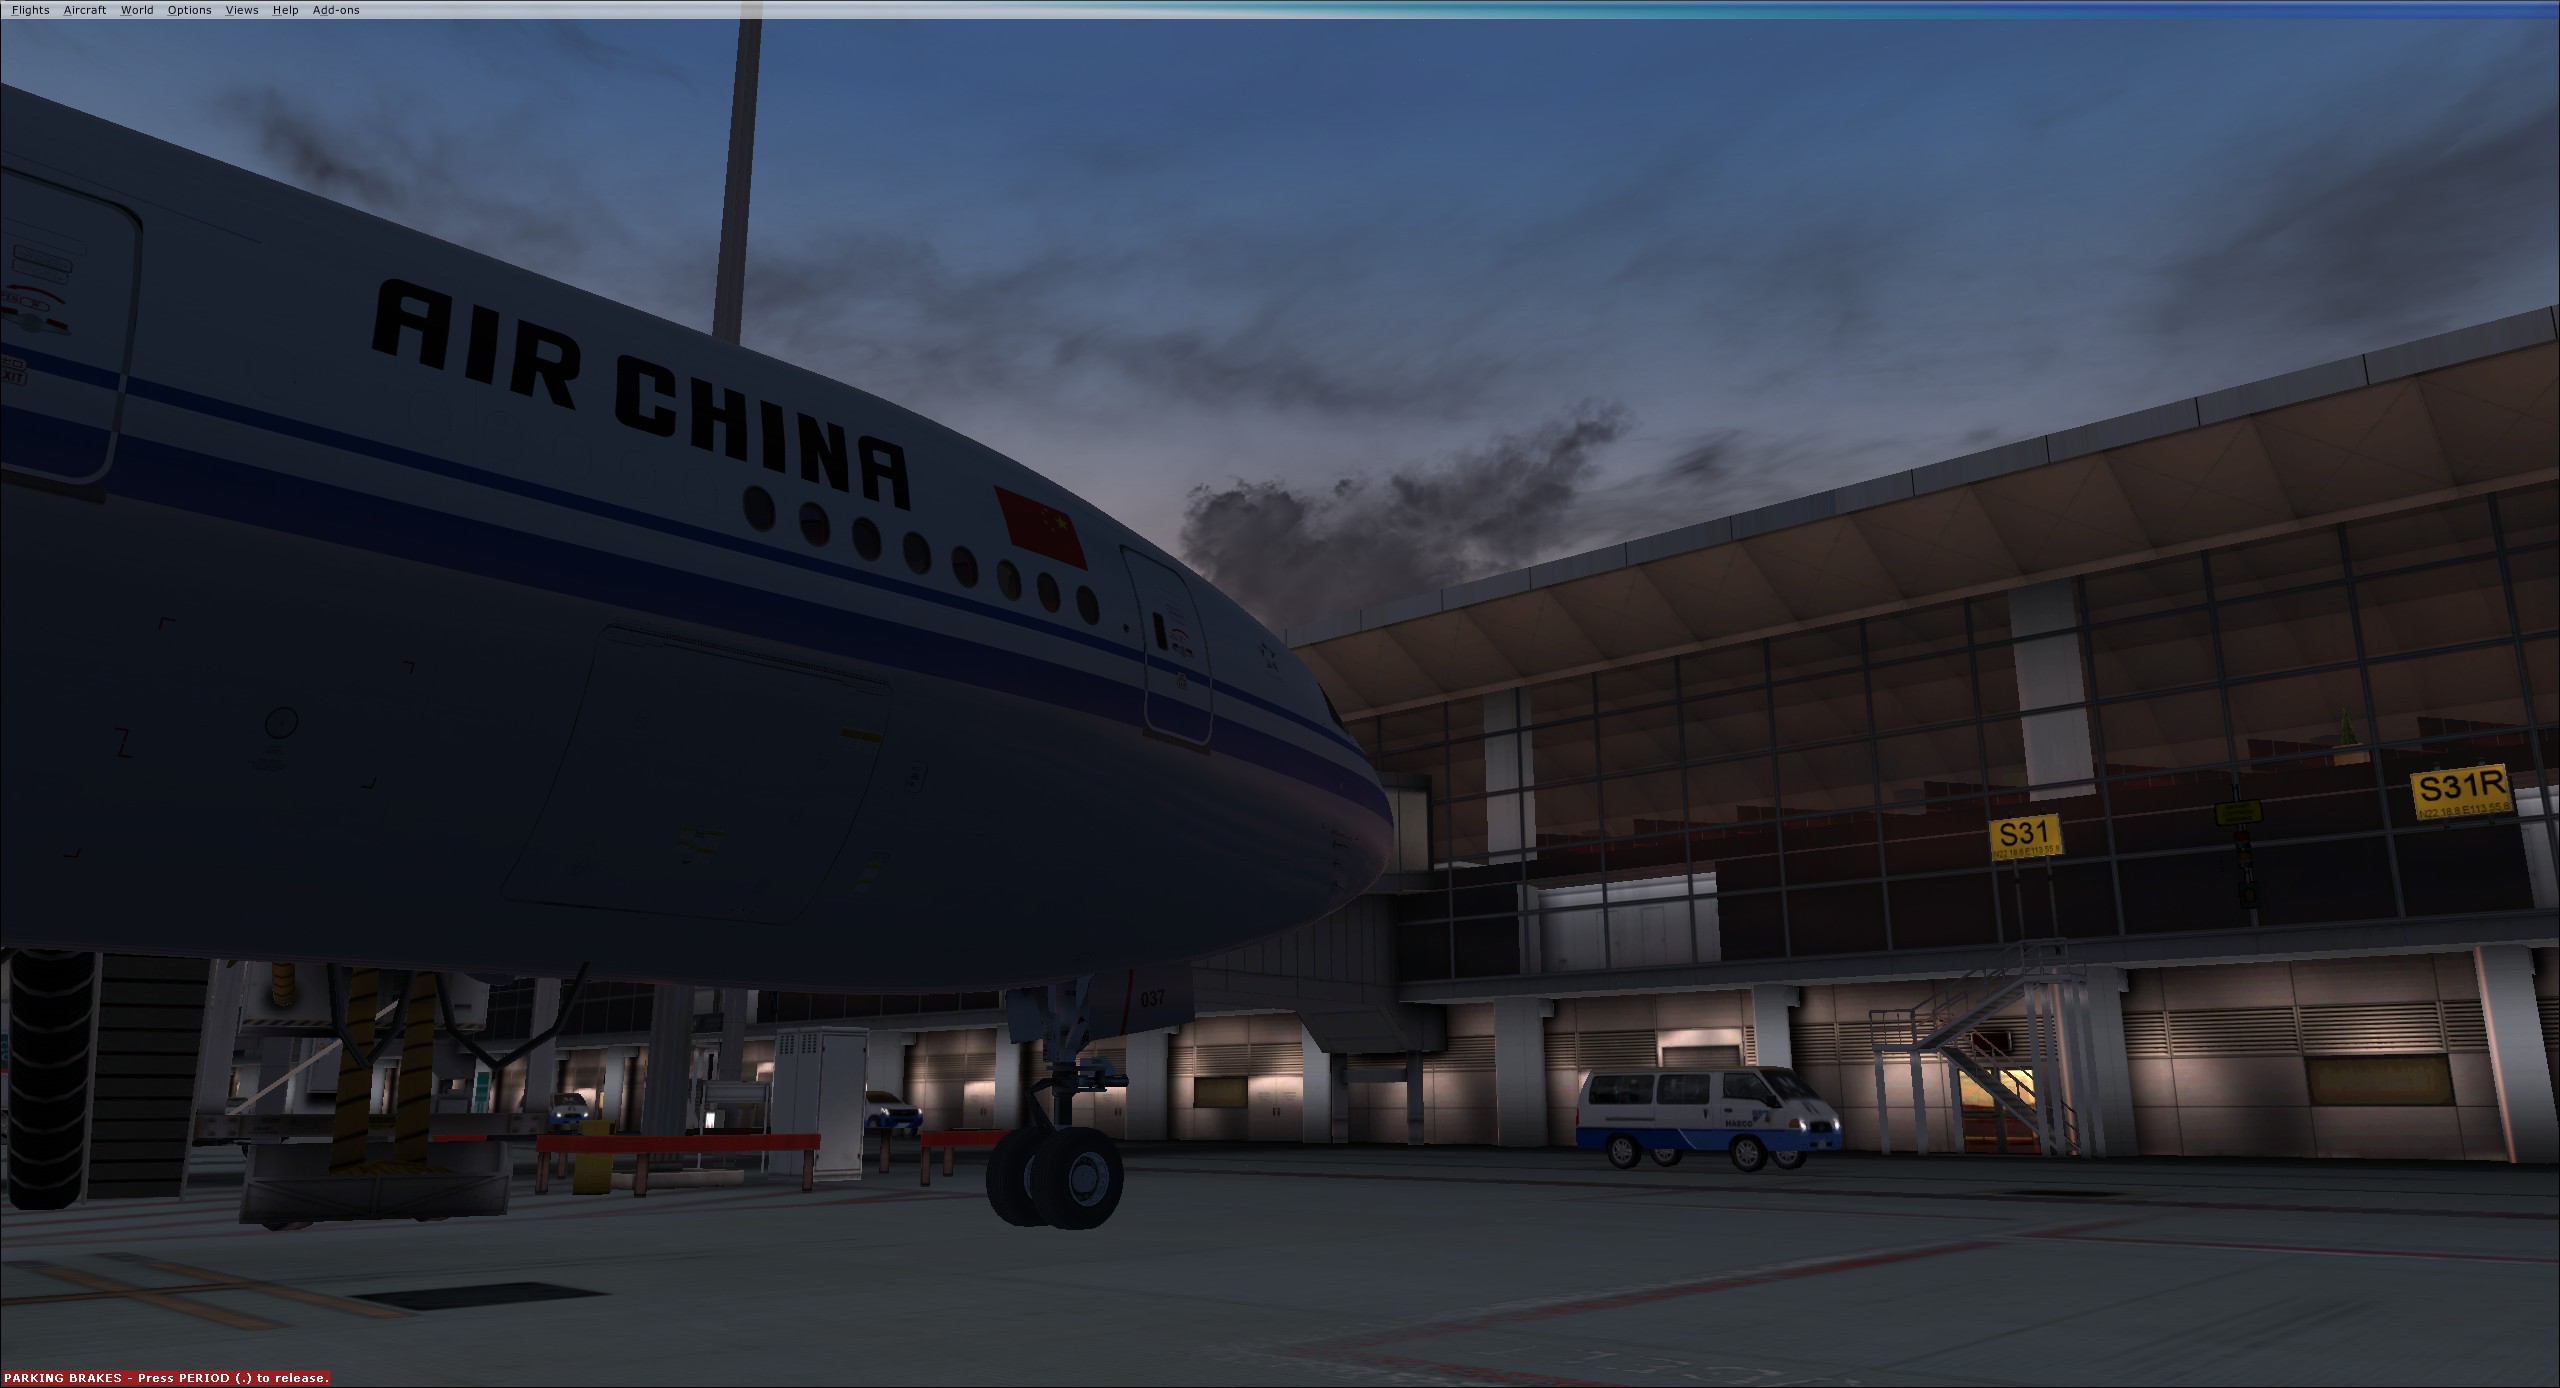 AirChina B77W VHHH-7869 